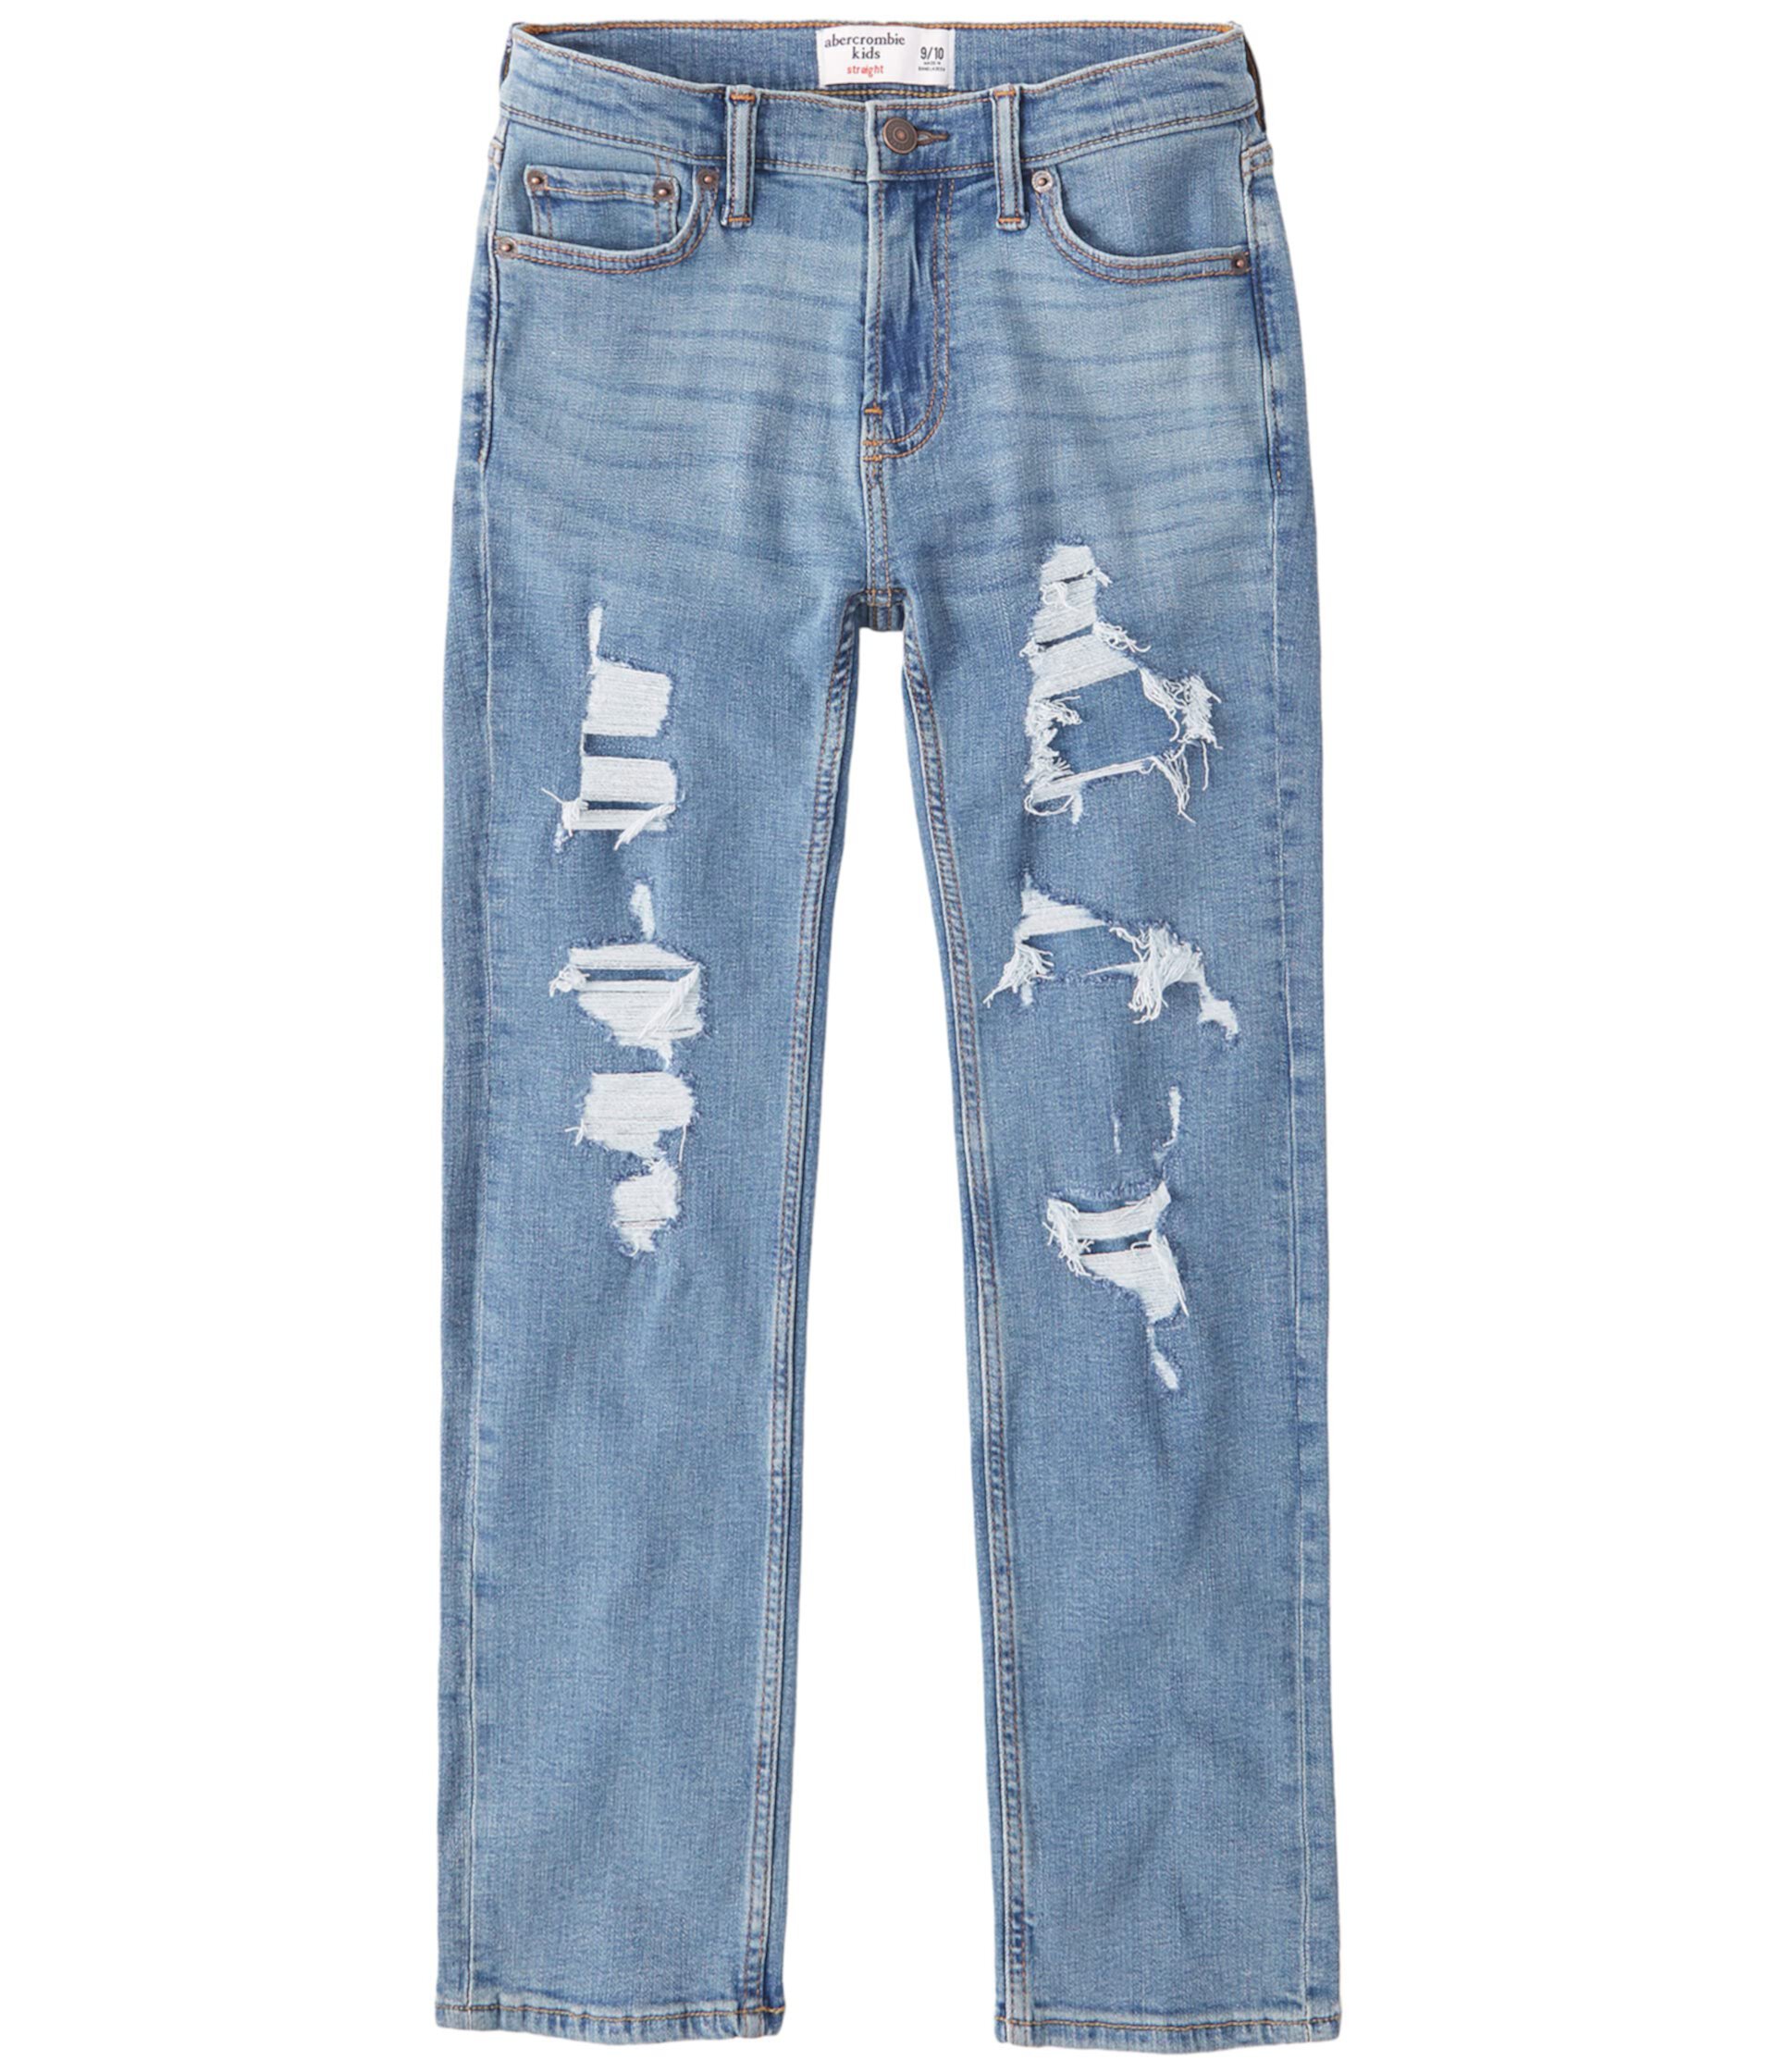 Прямые легкие рваные джинсы (для детей младшего и школьного возраста) Abercrombie kids